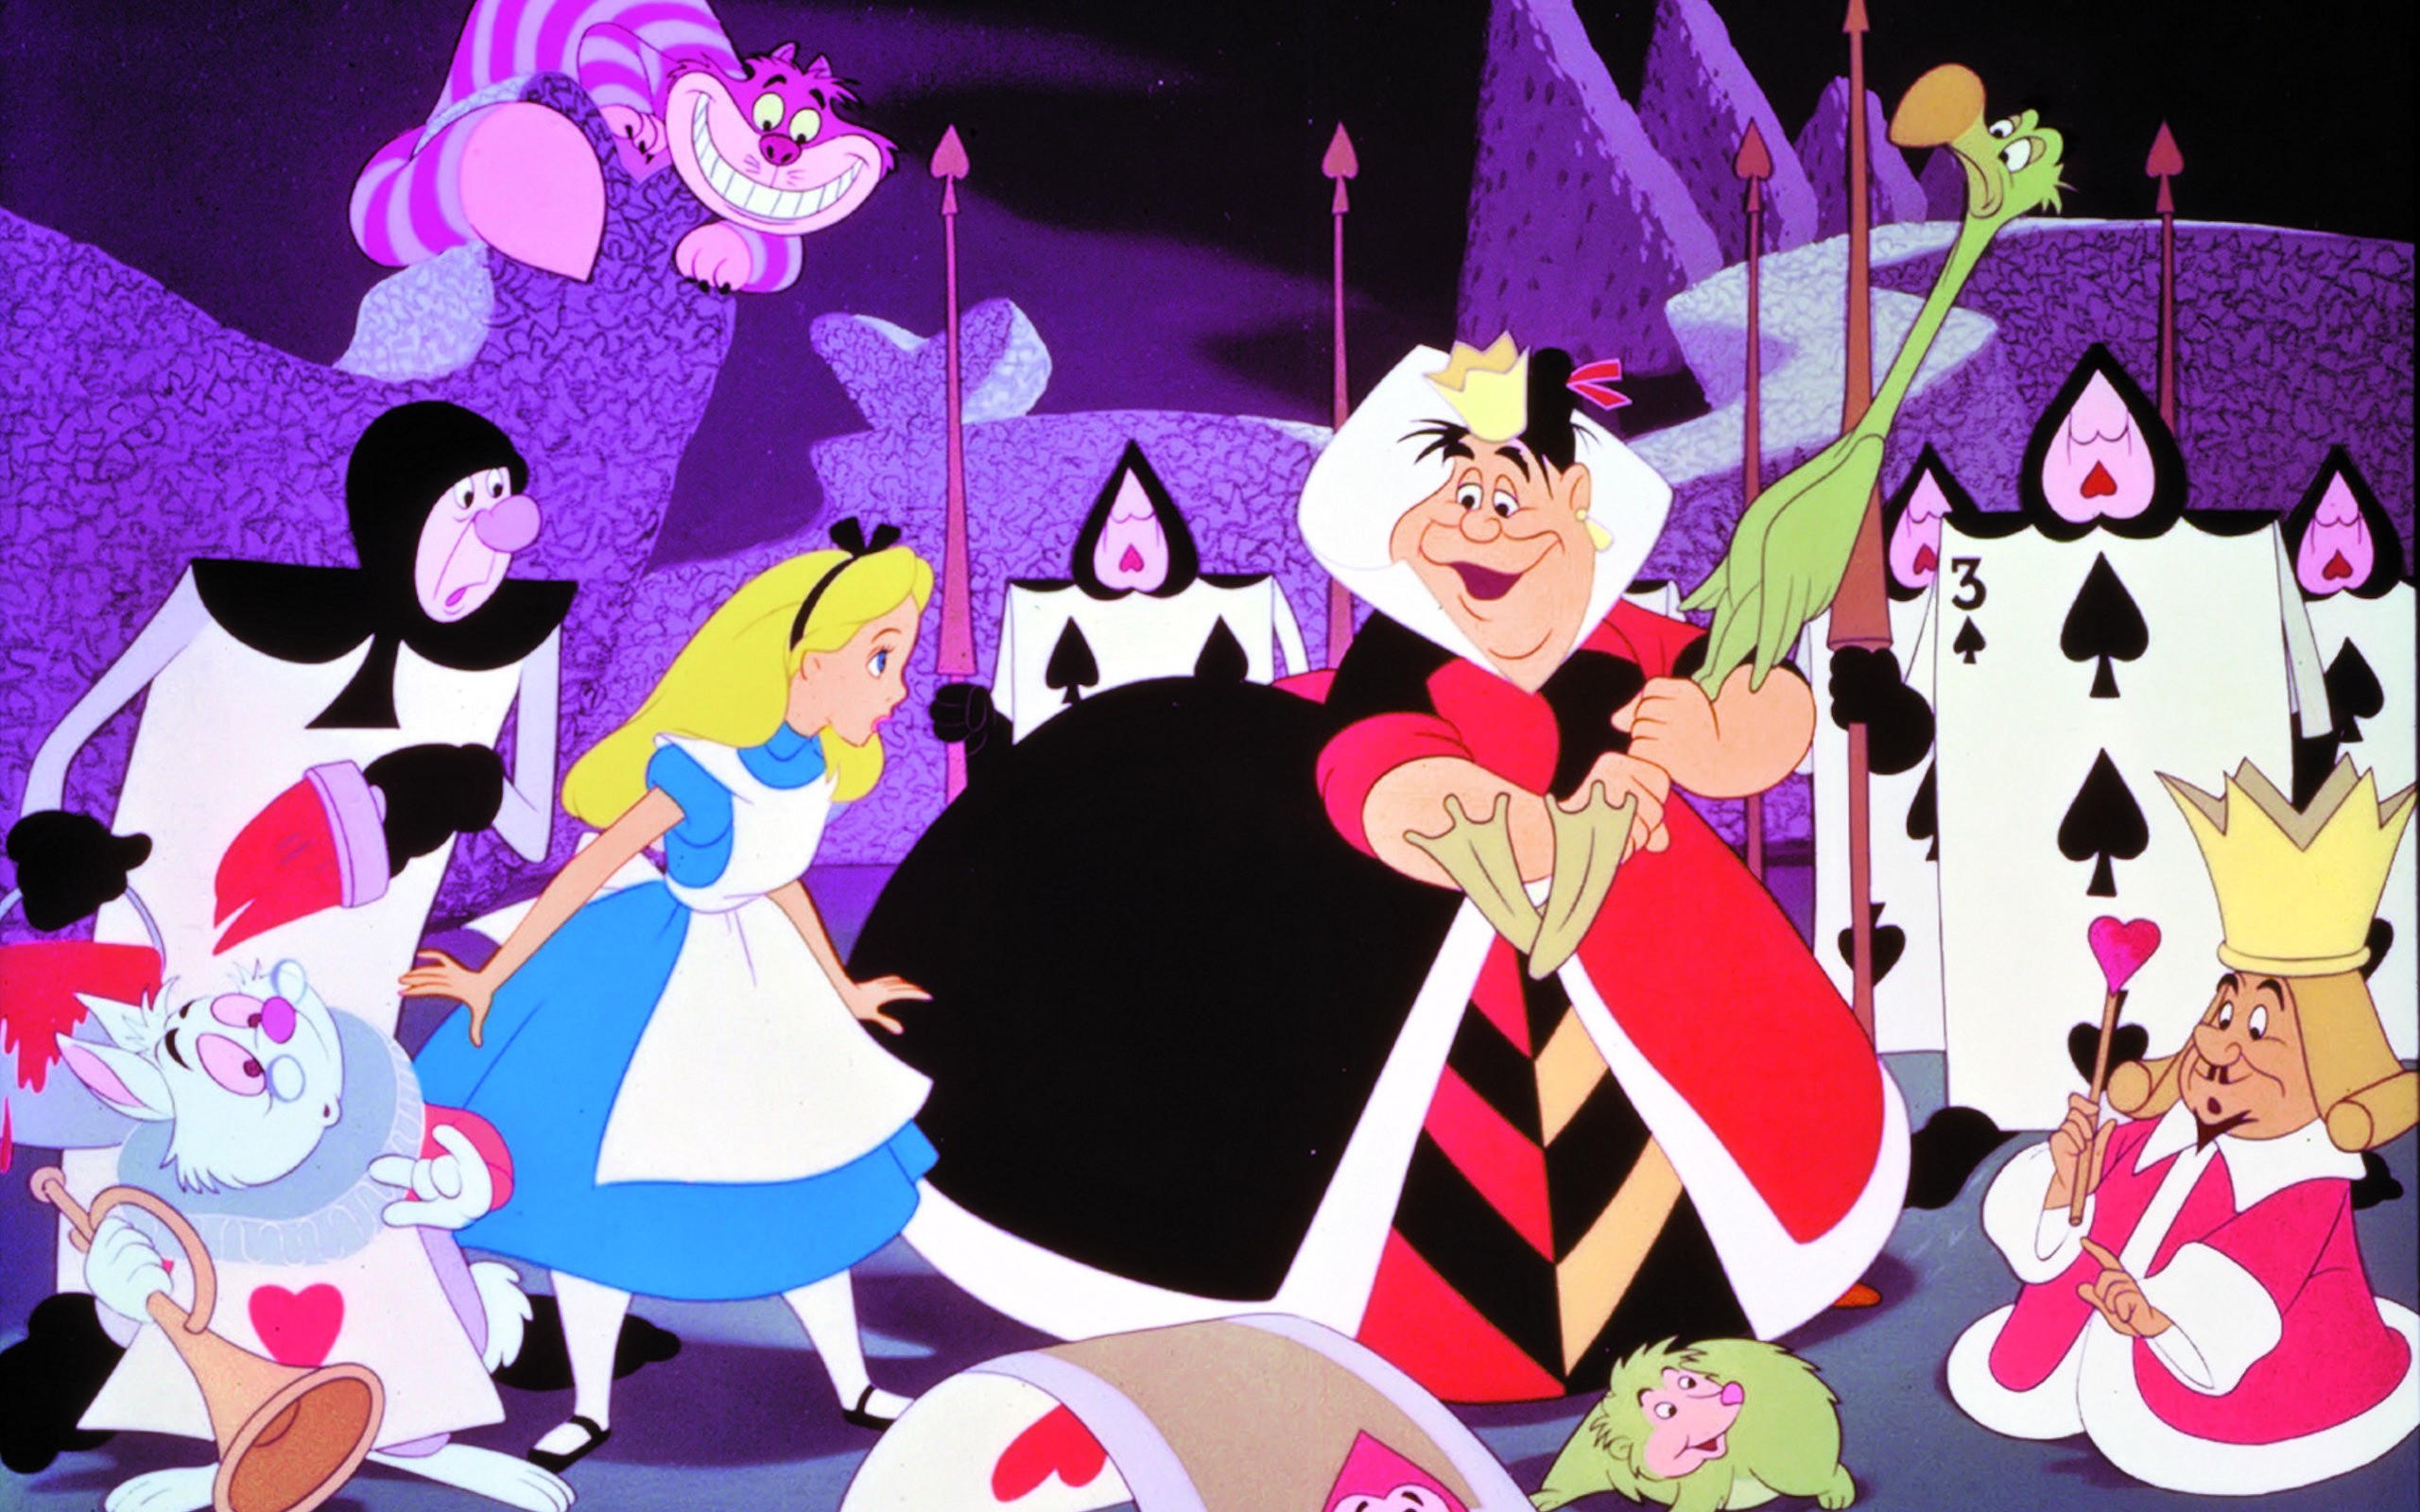 2560x1600 Queen of Hearts - Disney Wallpaper